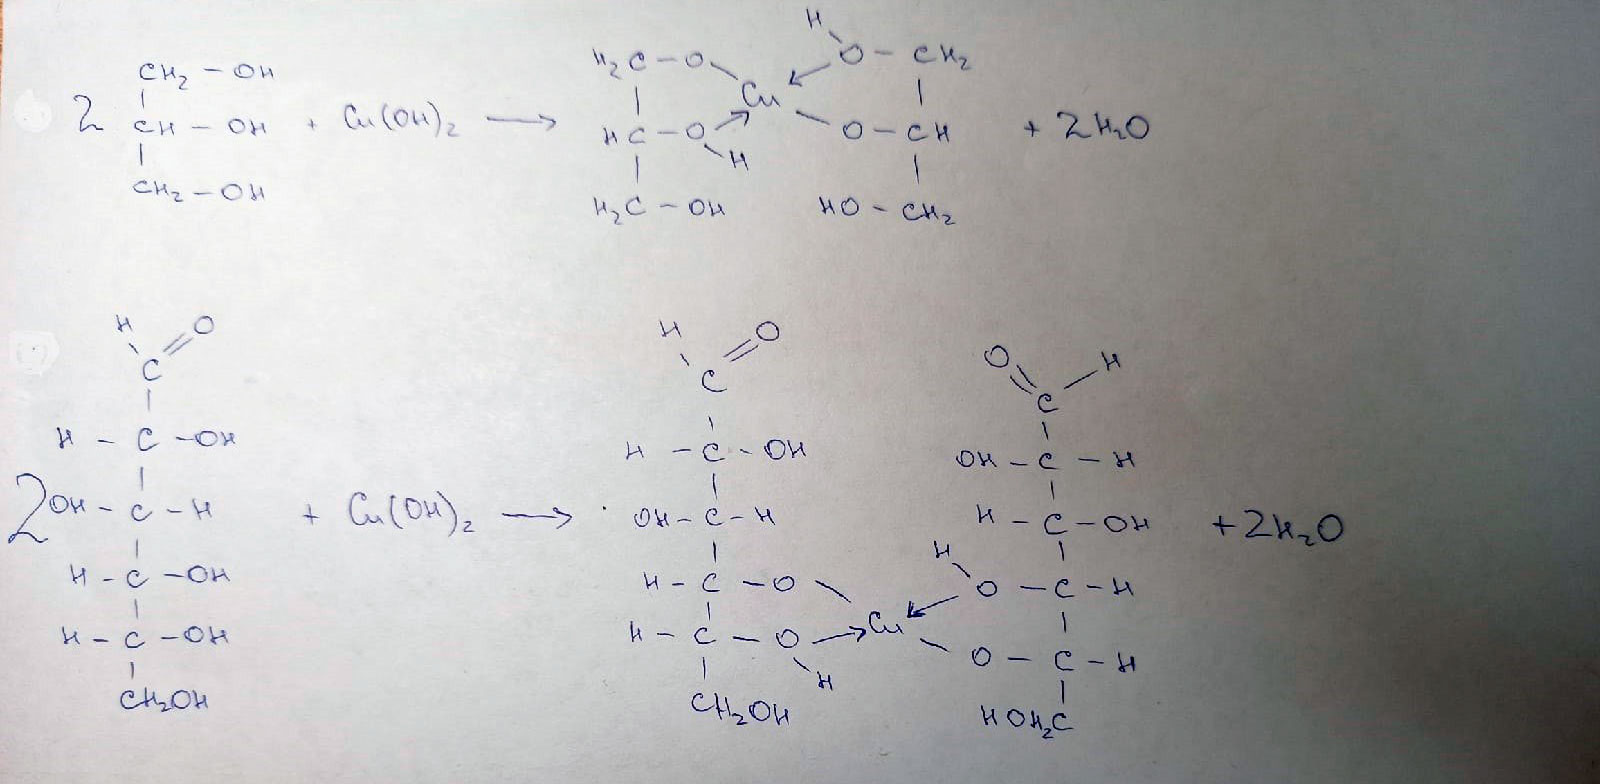 Гидроксид меди связь. Глицерин и оксид меди. Формальдегид и гидроксид меди 2. Глицерин и гидроксид меди 2. Глицерин и оксид меди 2.